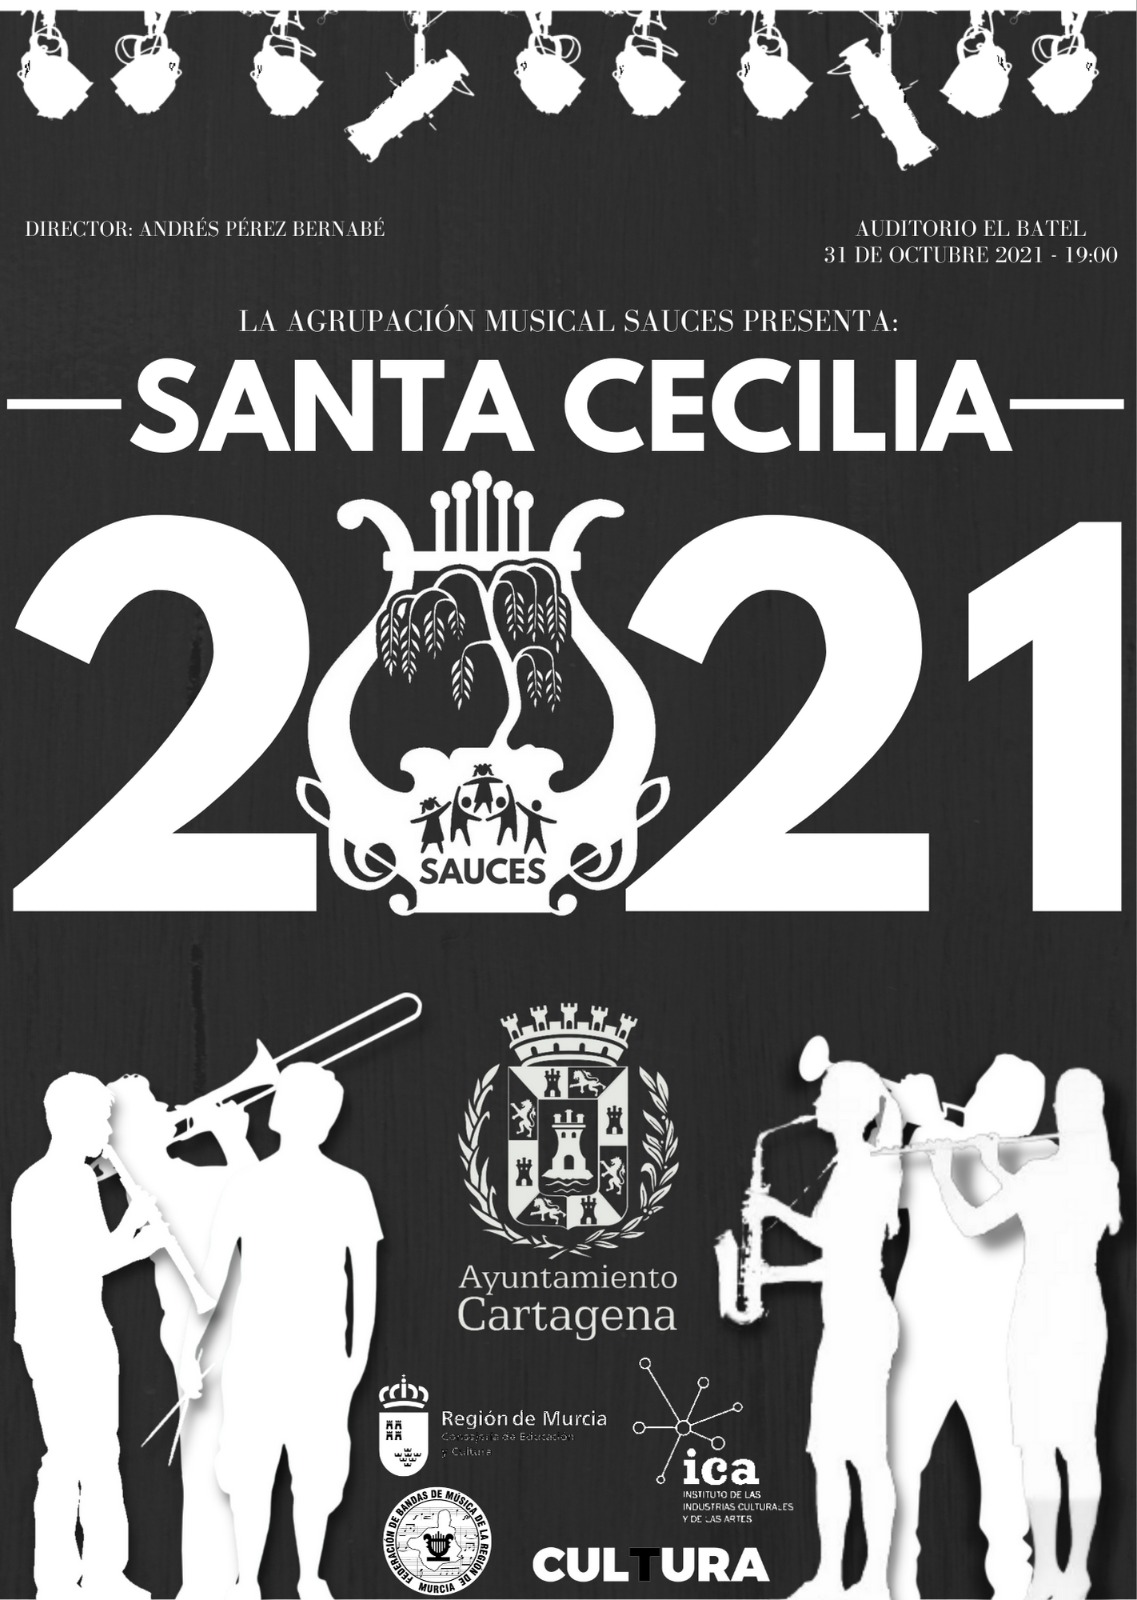 Santa Cecilia 2021 Agrupación Musical Sauces